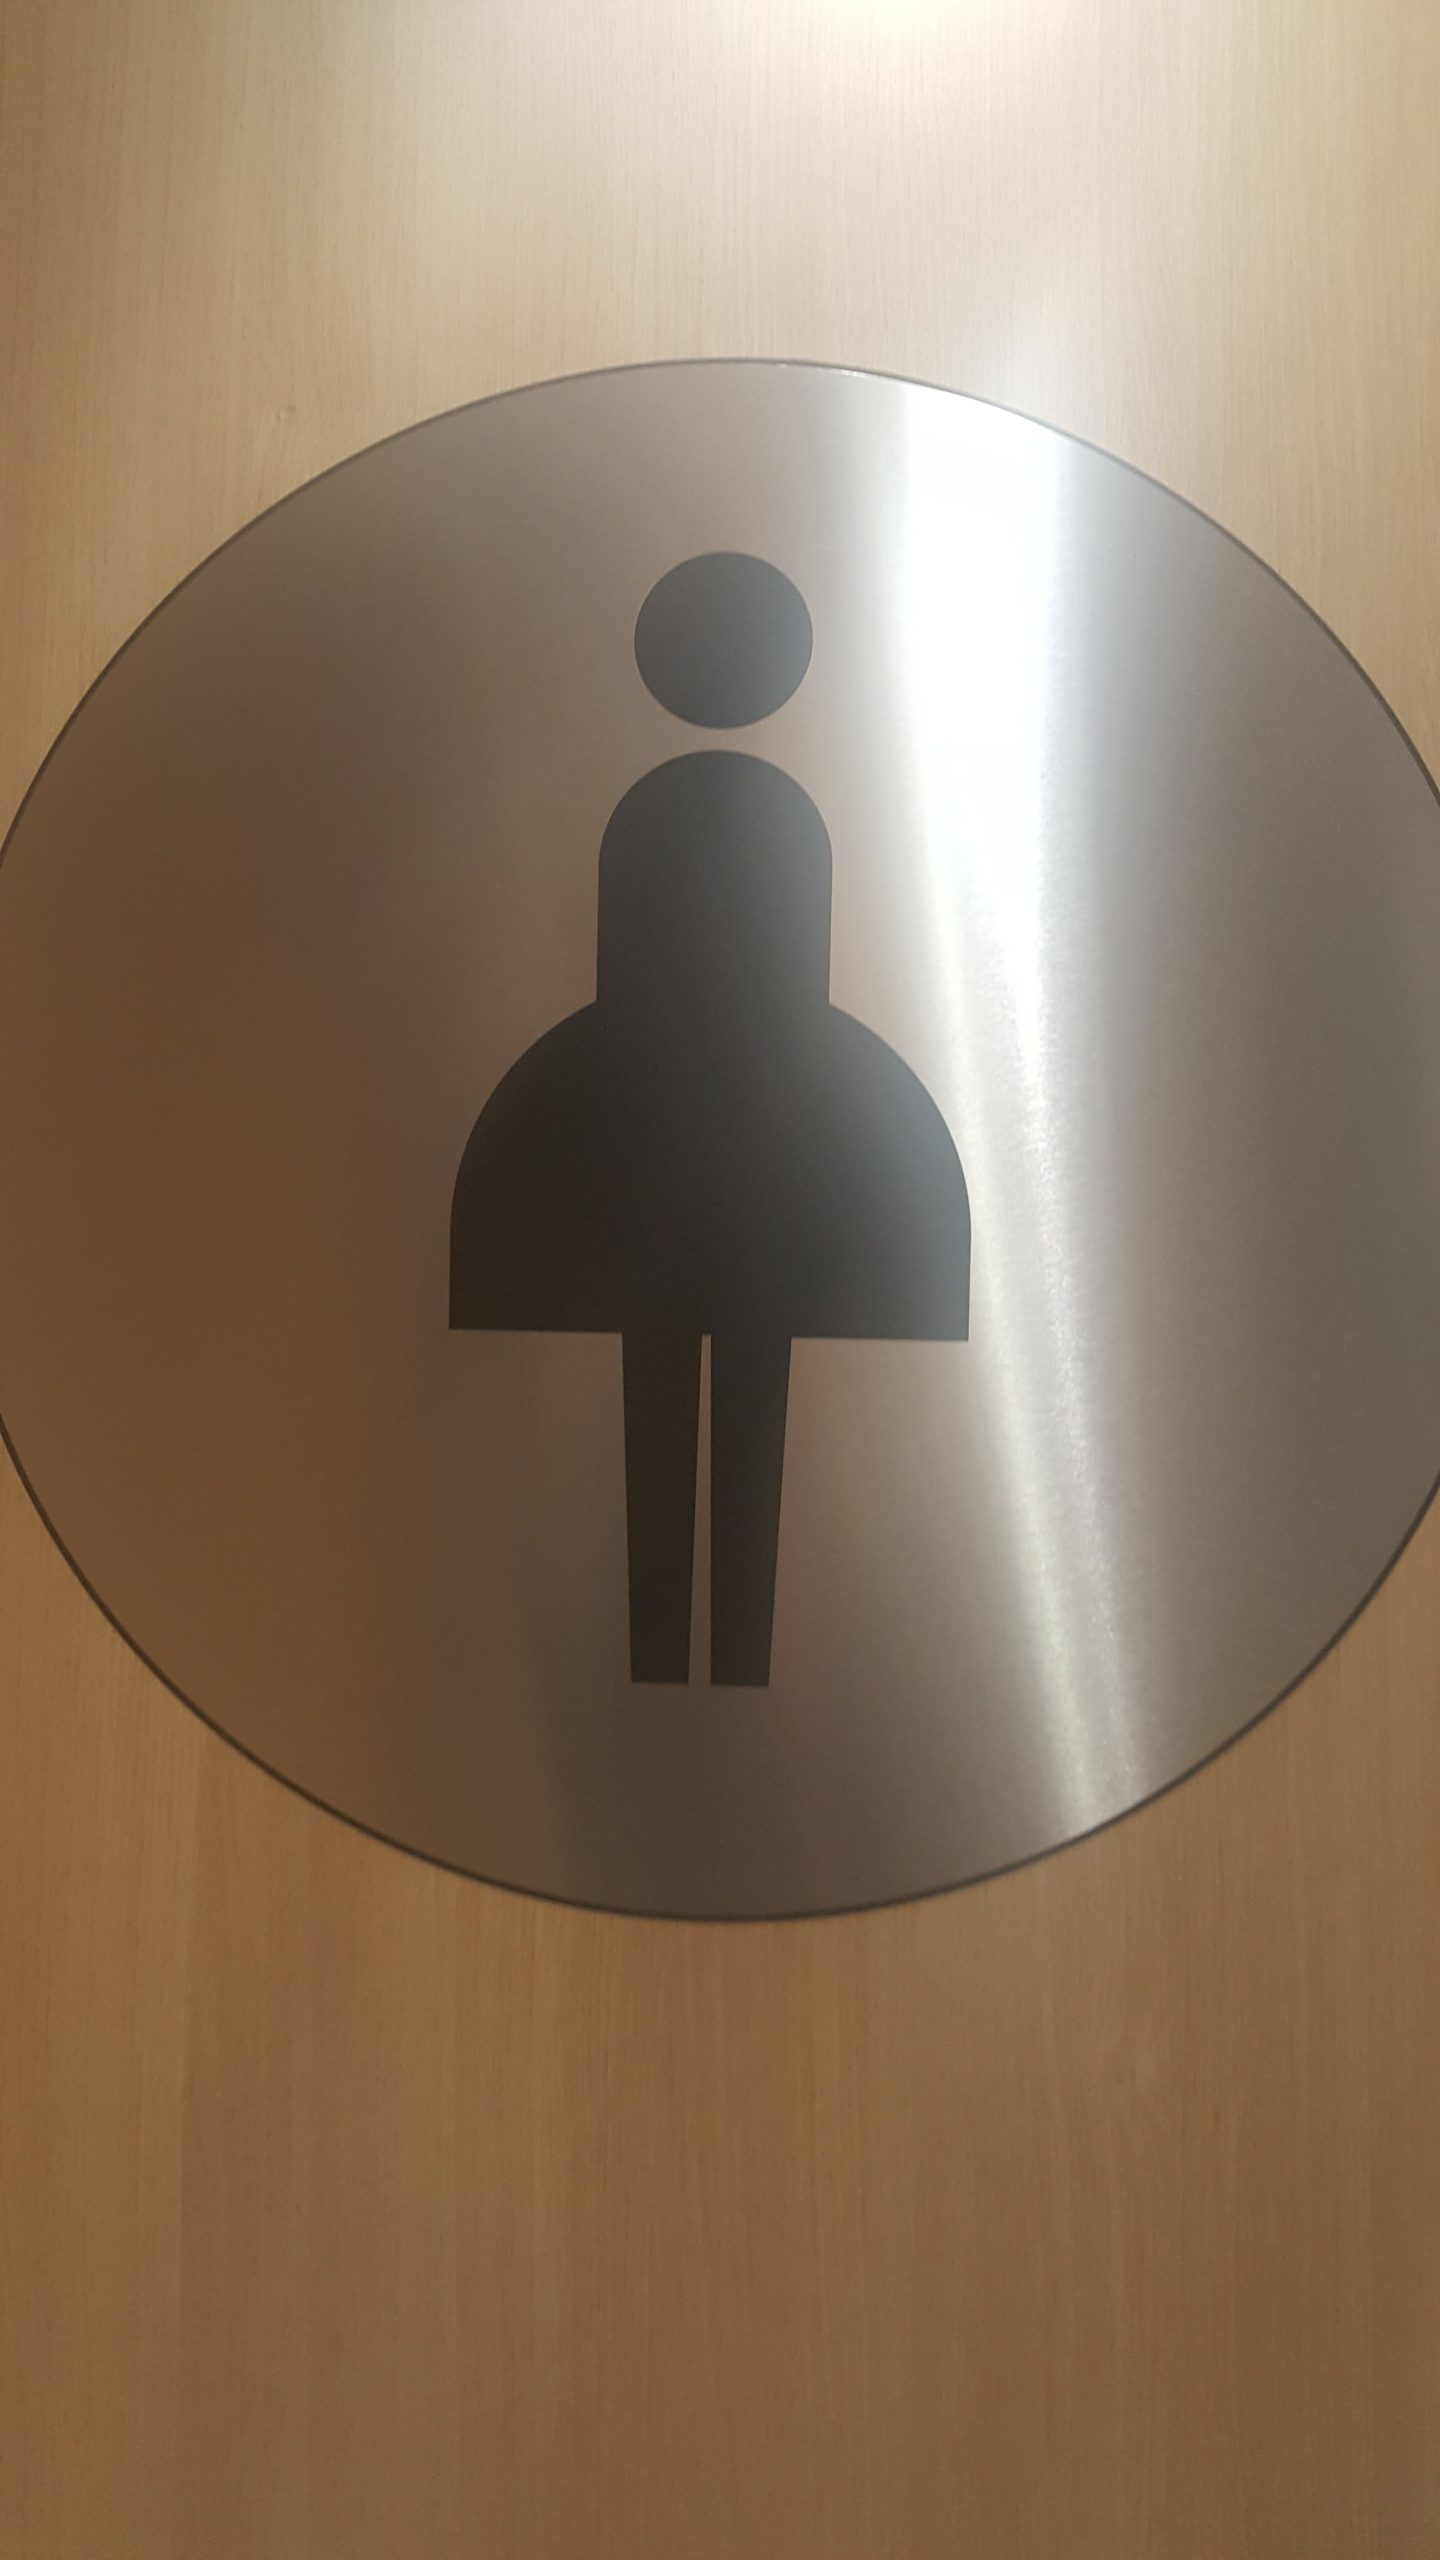 bathroom signage in England